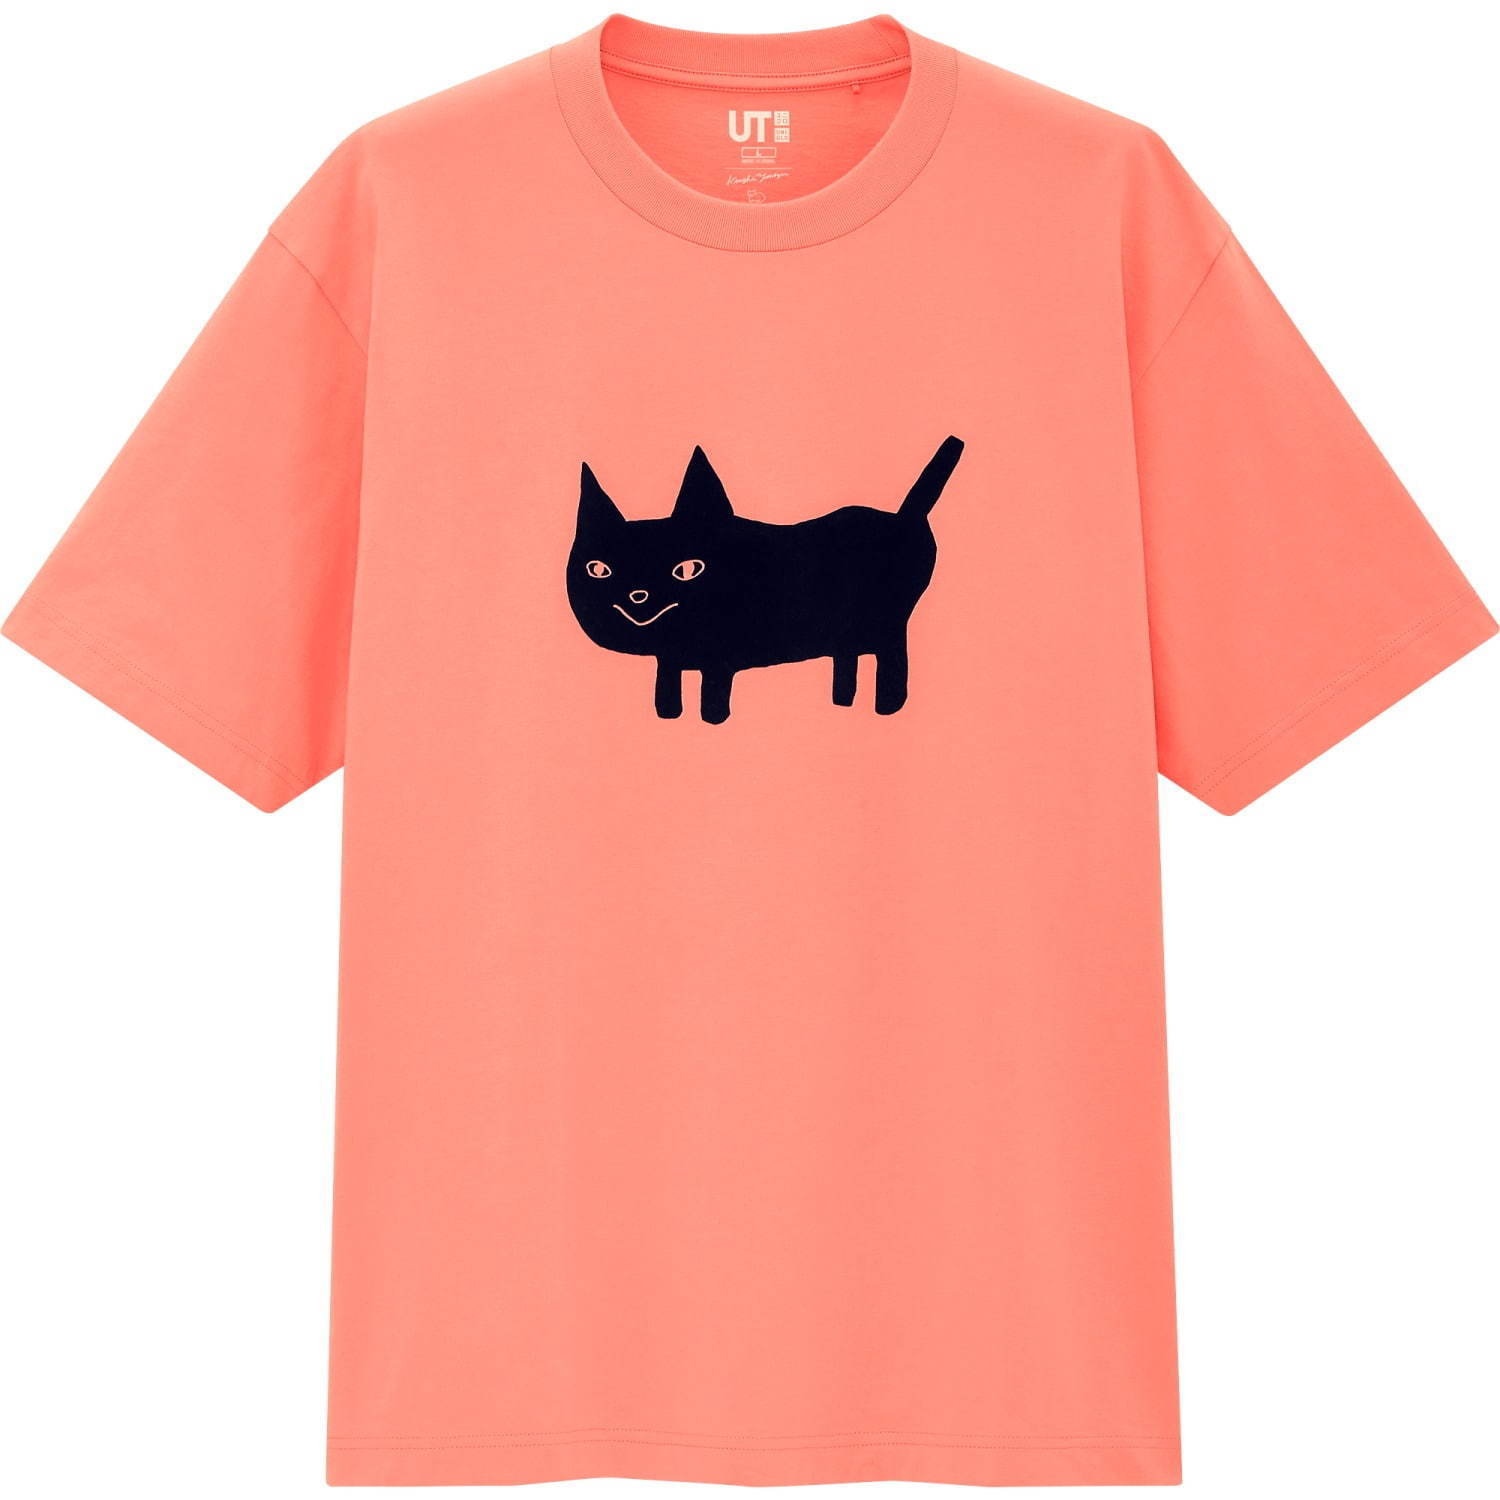 ユニクロUT×米津玄師の初コラボ、米津が描くオリジナルキャラのプリントTシャツ - ファッションプレス